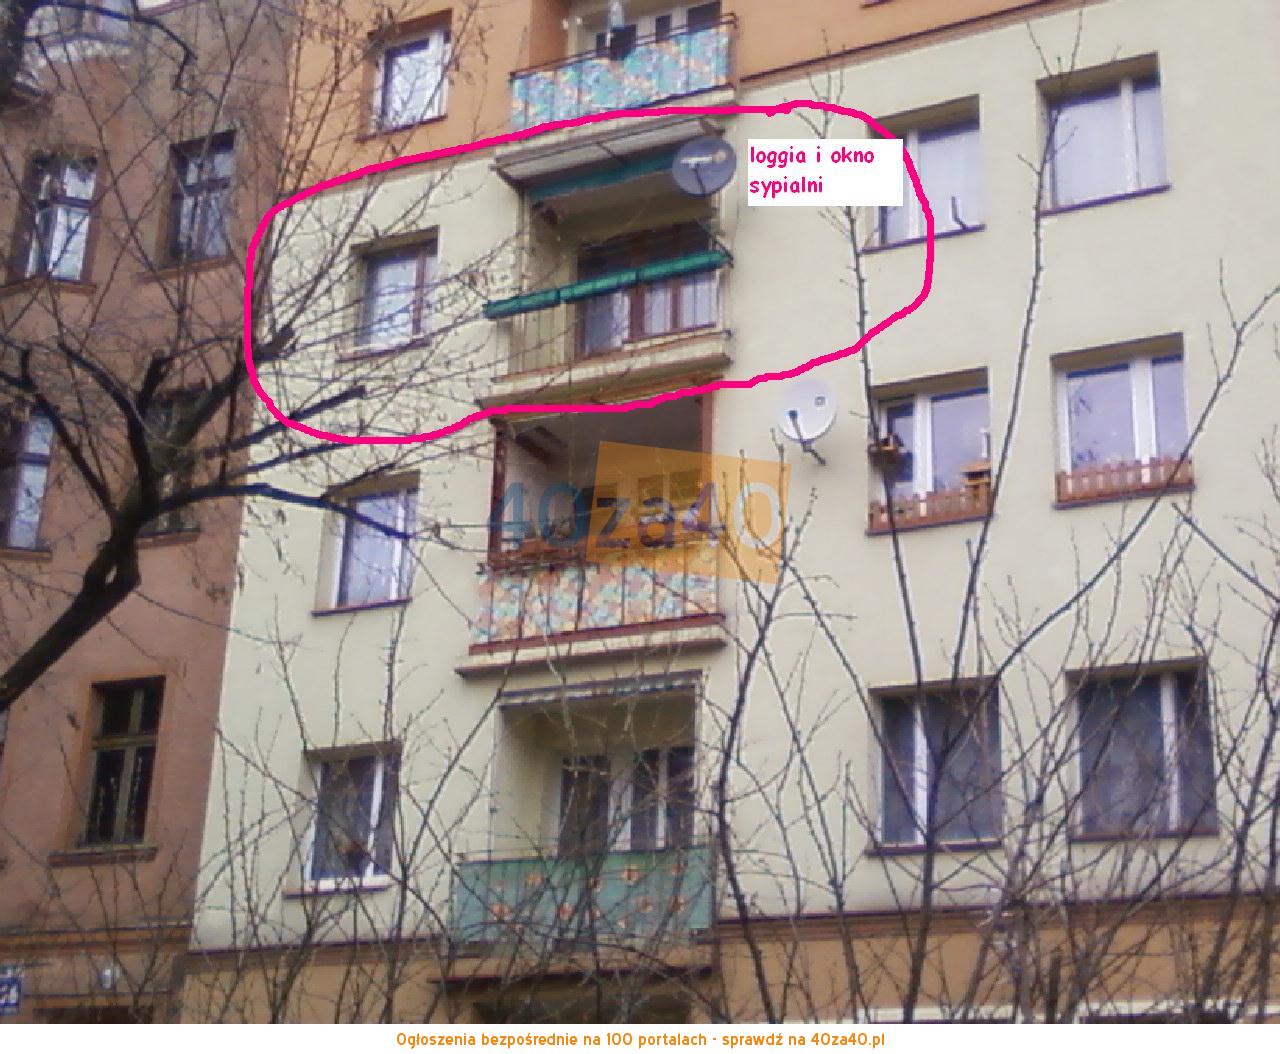 Mieszkanie do wynajęcia, pokoje: 3, cena: 800,00 PLN, Legnica, kontakt: 609261327